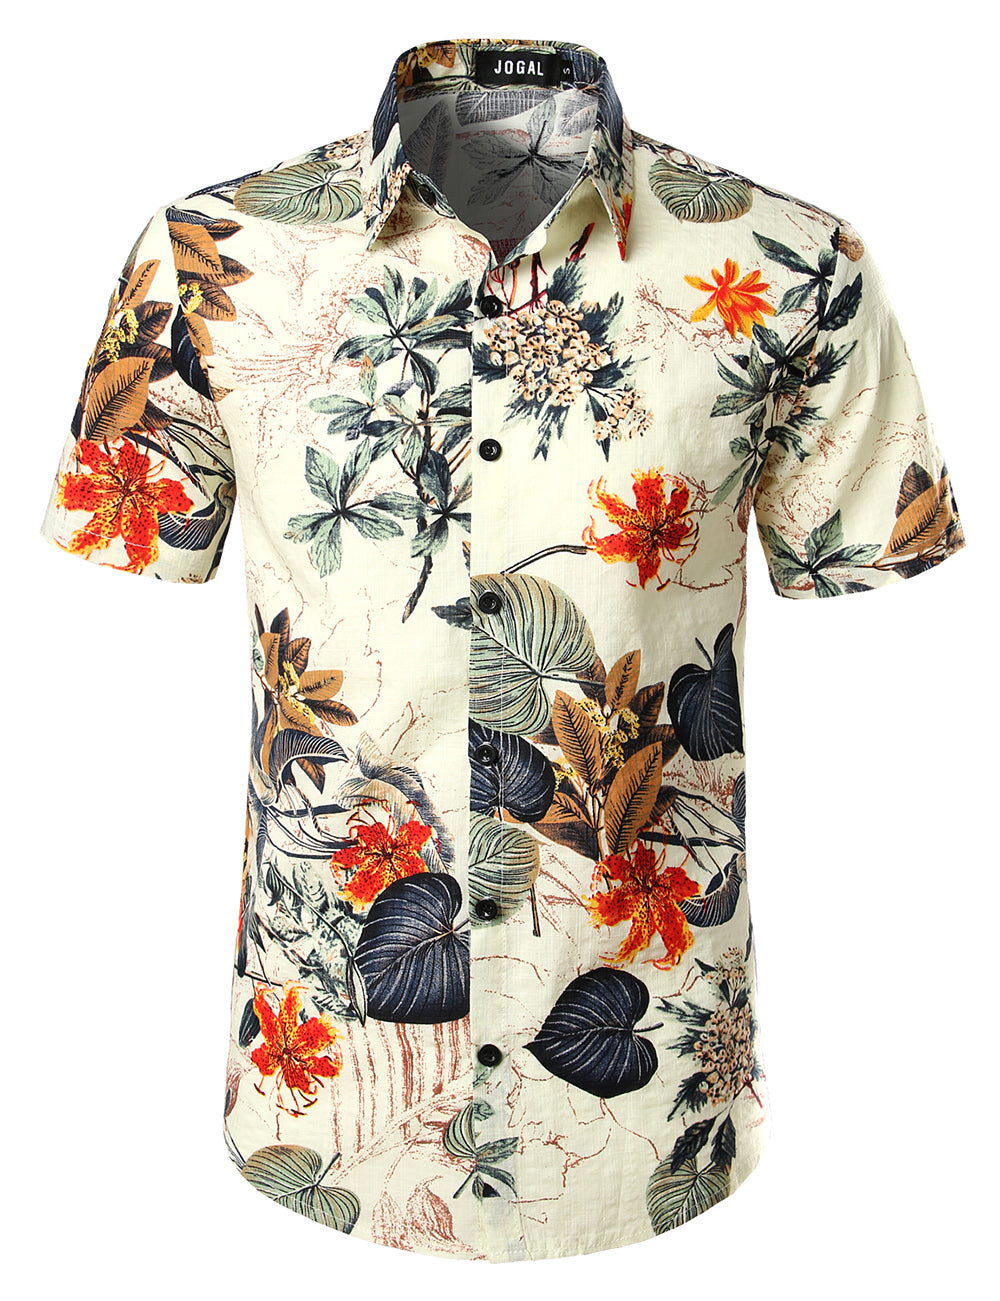 JOGAL Men's Flower Casual Button Down Short Sleeve Hawaiian Shirt(White)